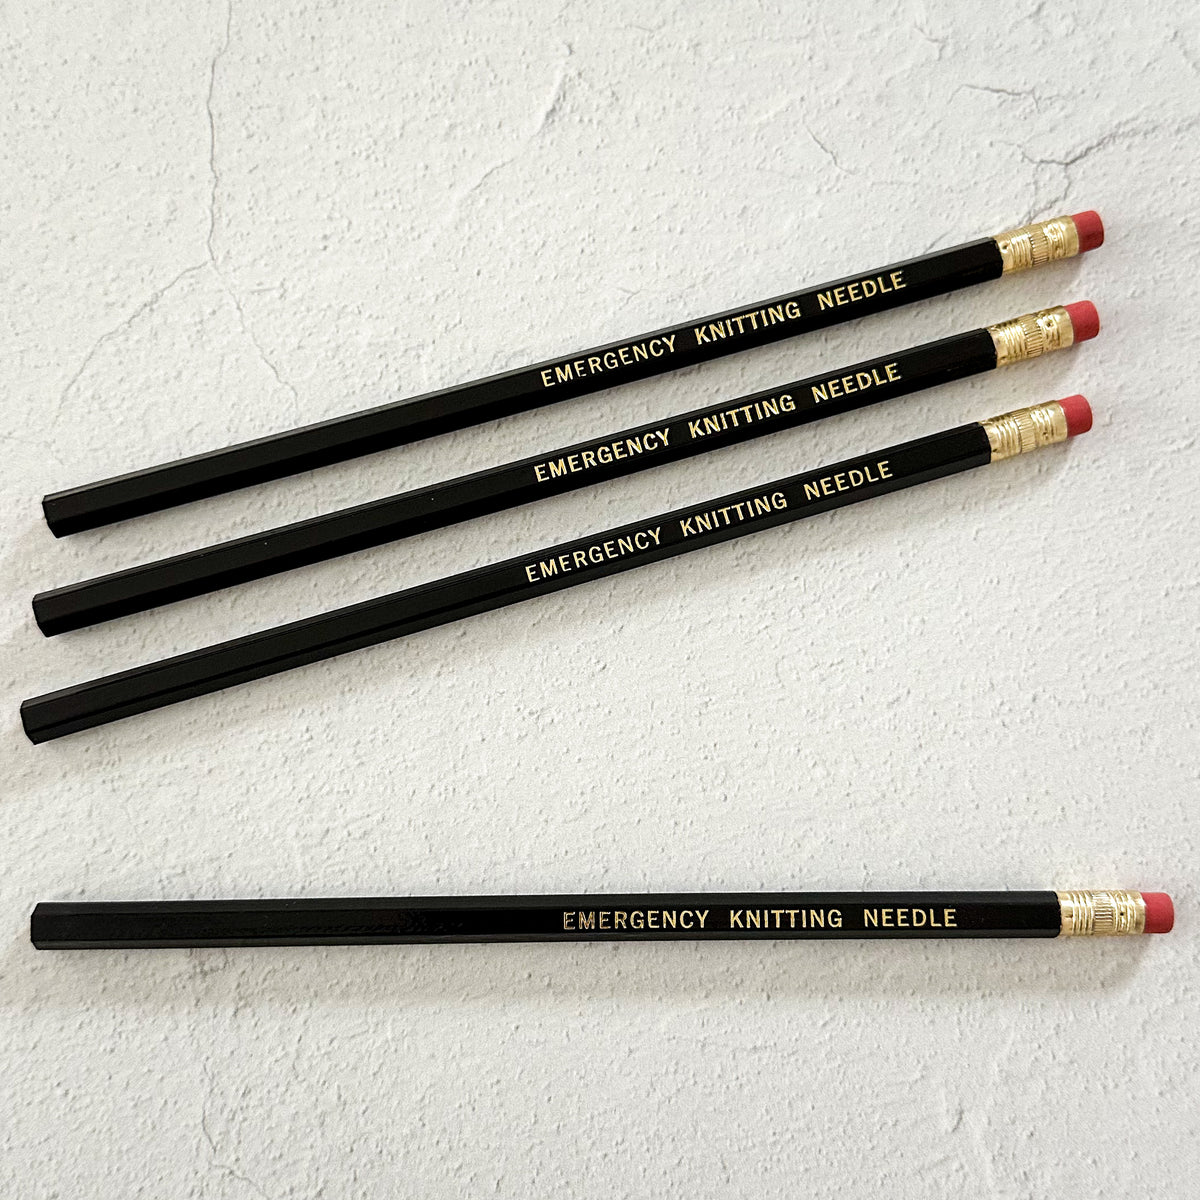 Emergency Knitting Needle Pencil